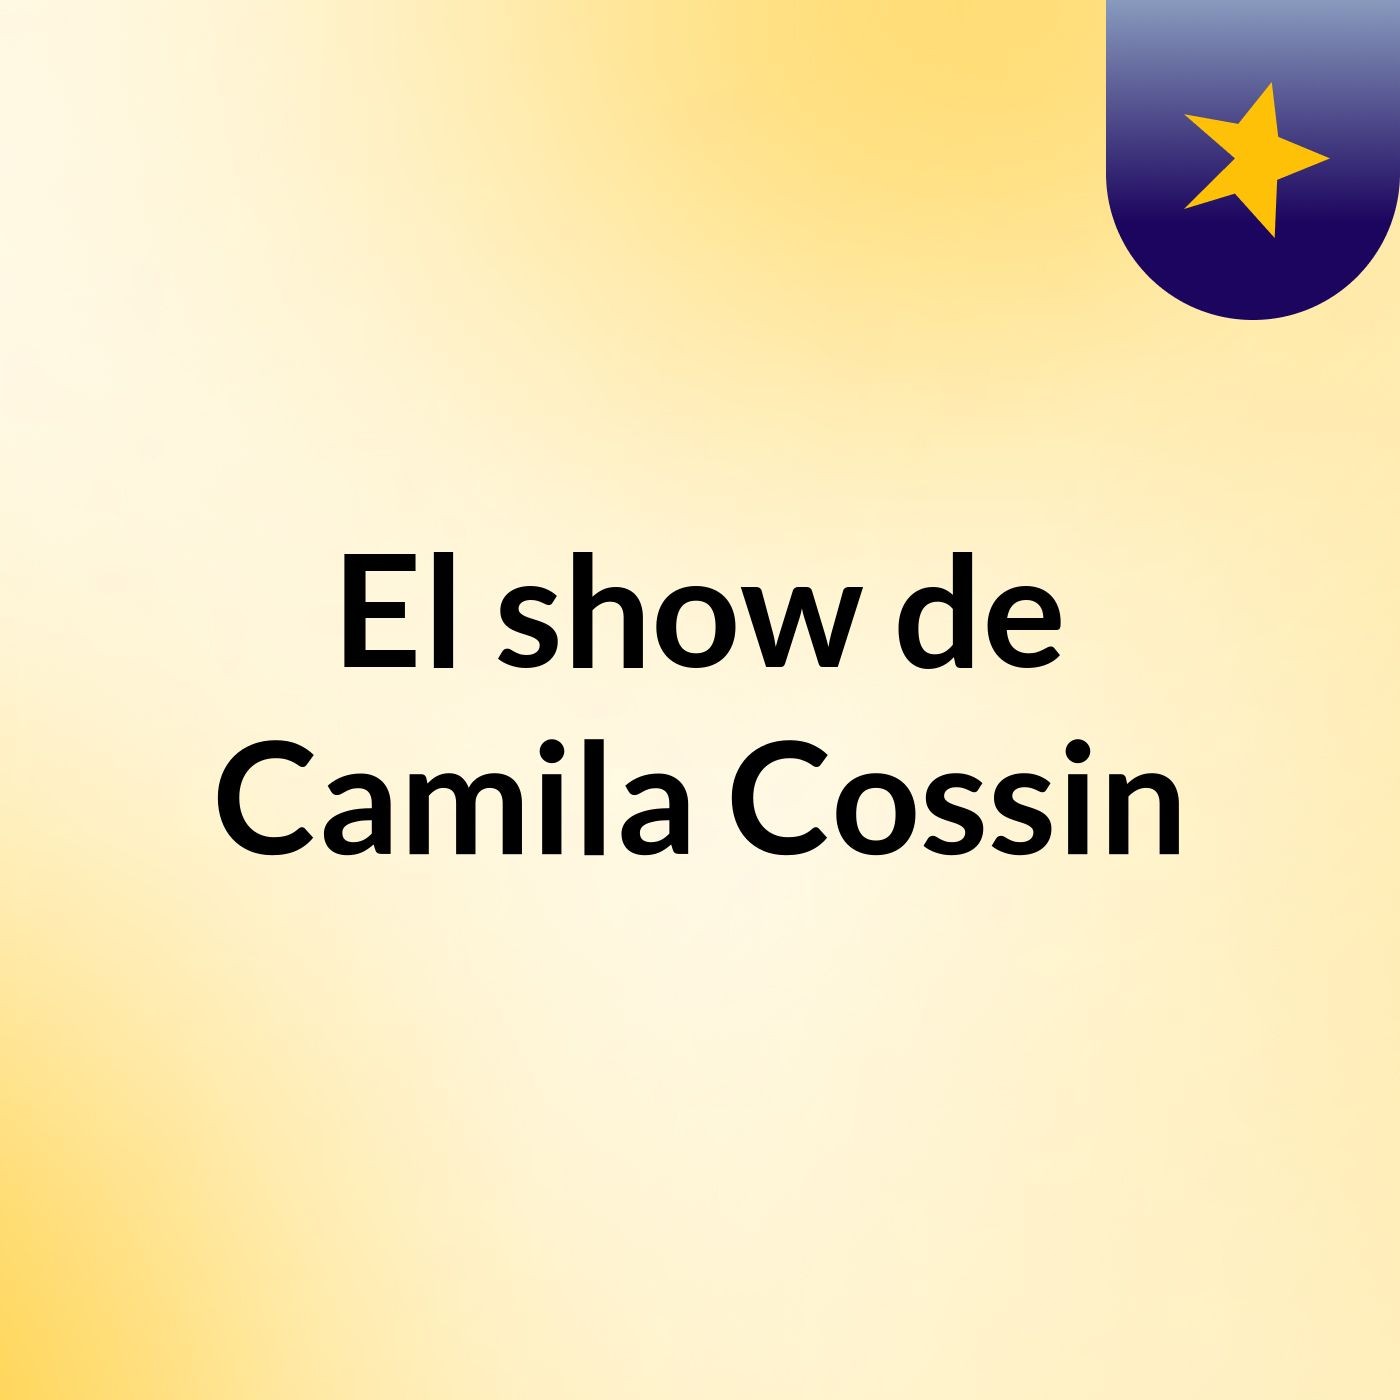 El show de Camila Cossin